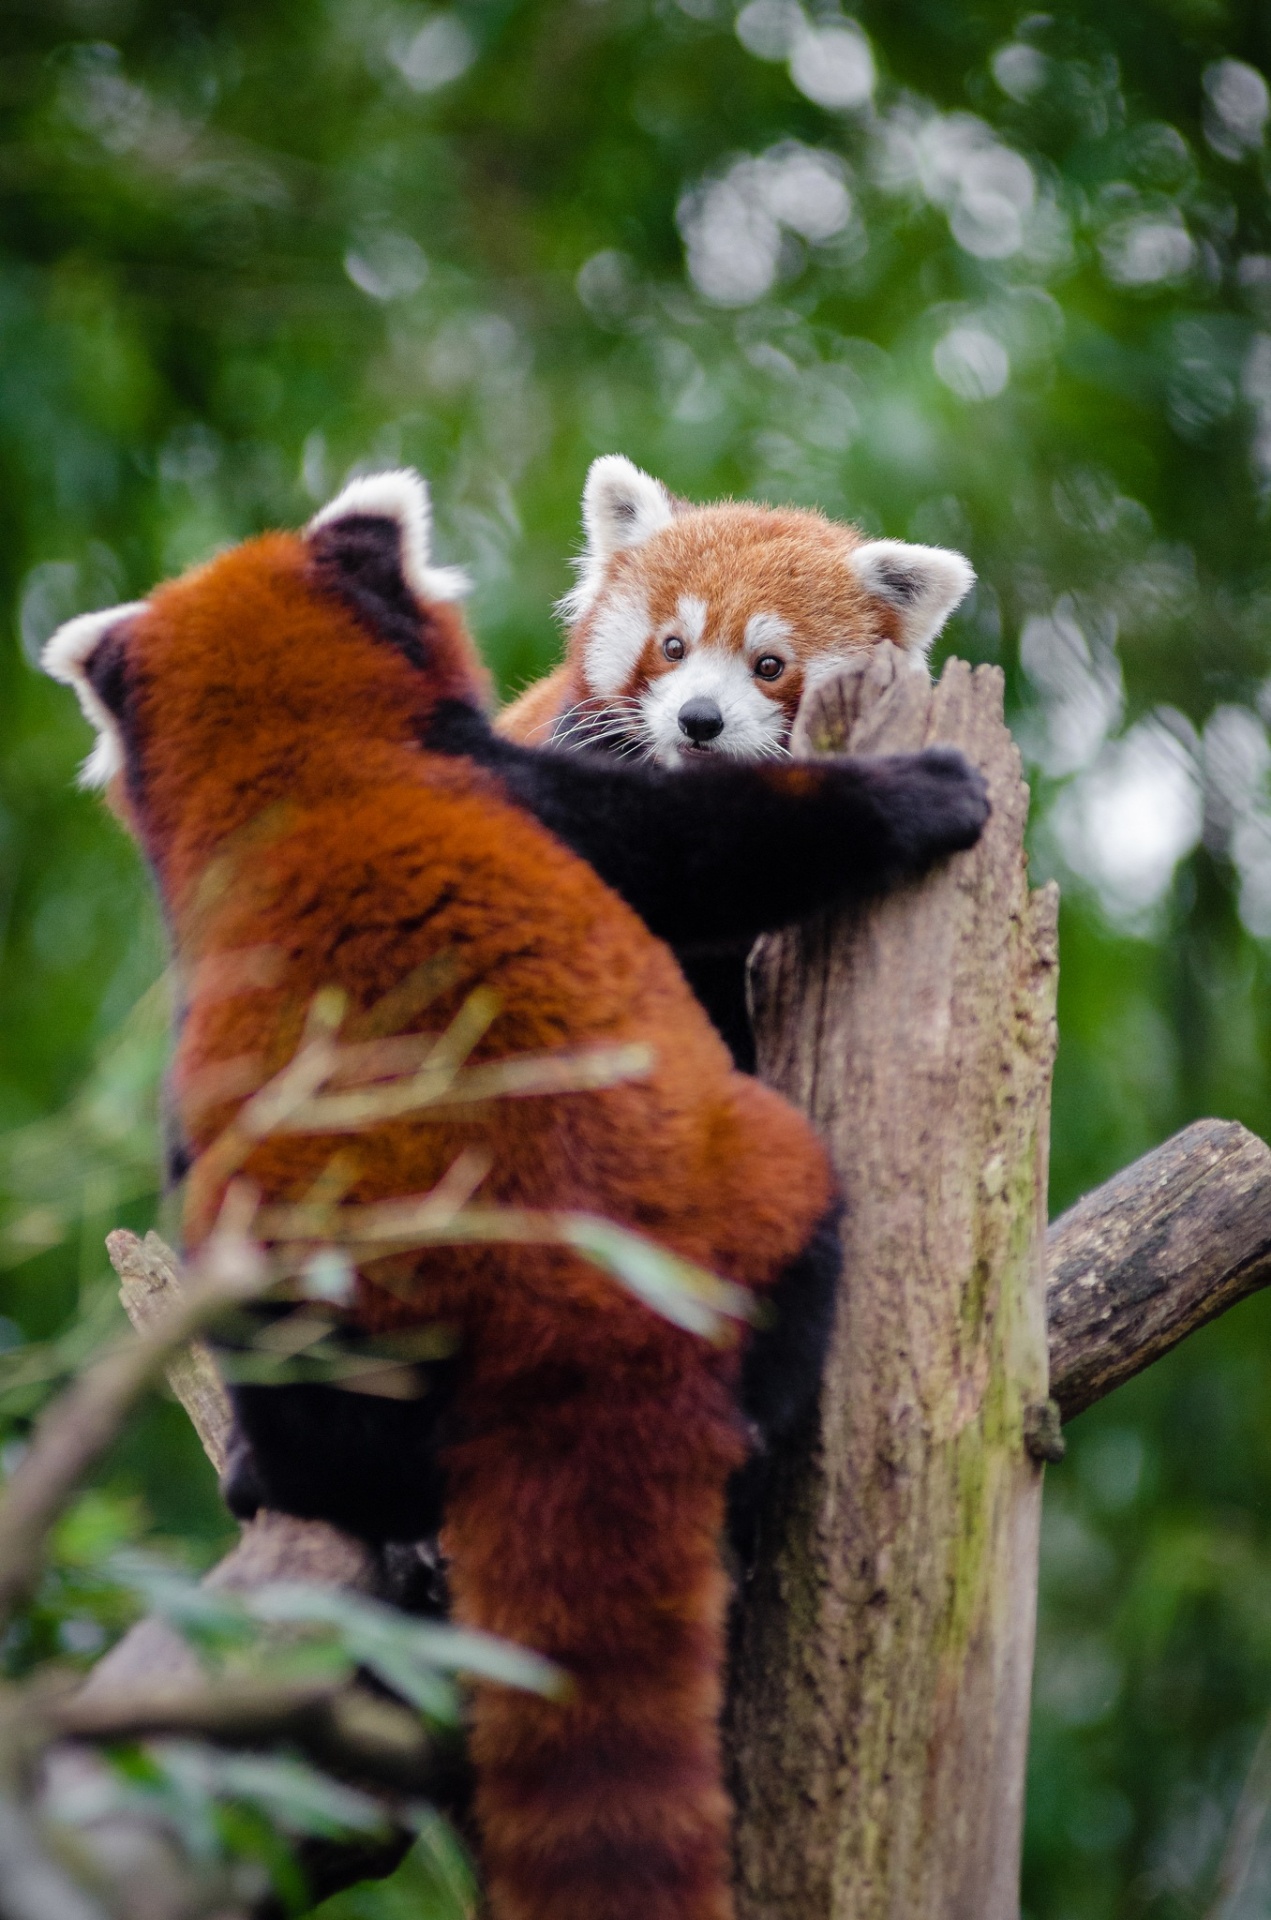 Adorable de los pares de pandas rojos